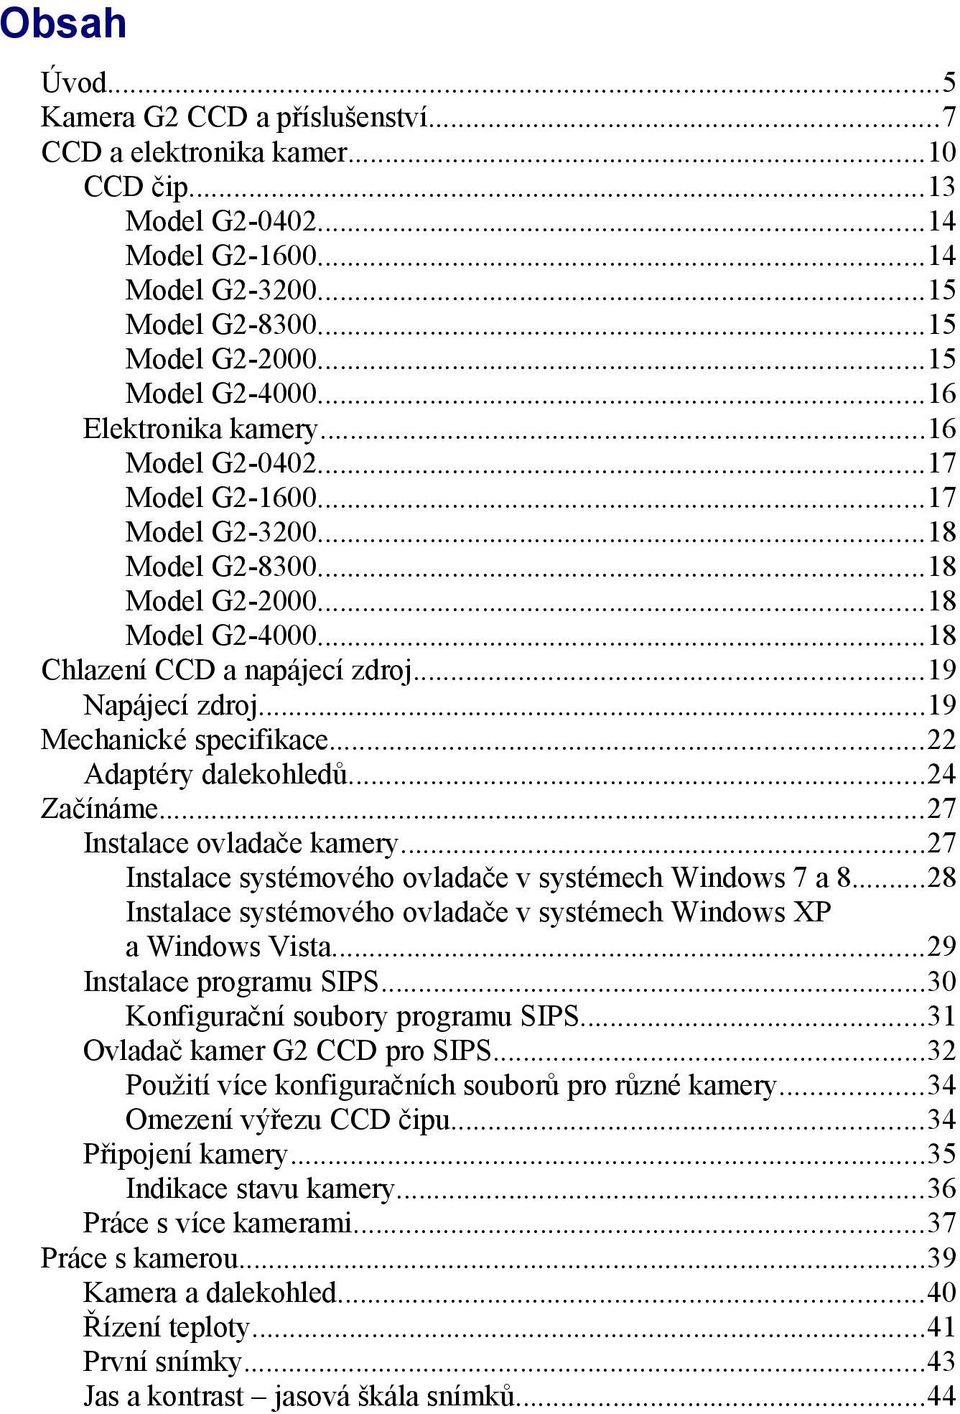 ..19 Mechanické specifikace...22 Adaptéry dalekohledů...24 Začínáme...27 Instalace ovladače kamery...27 Instalace systémového ovladače v systémech Windows 7 a 8.